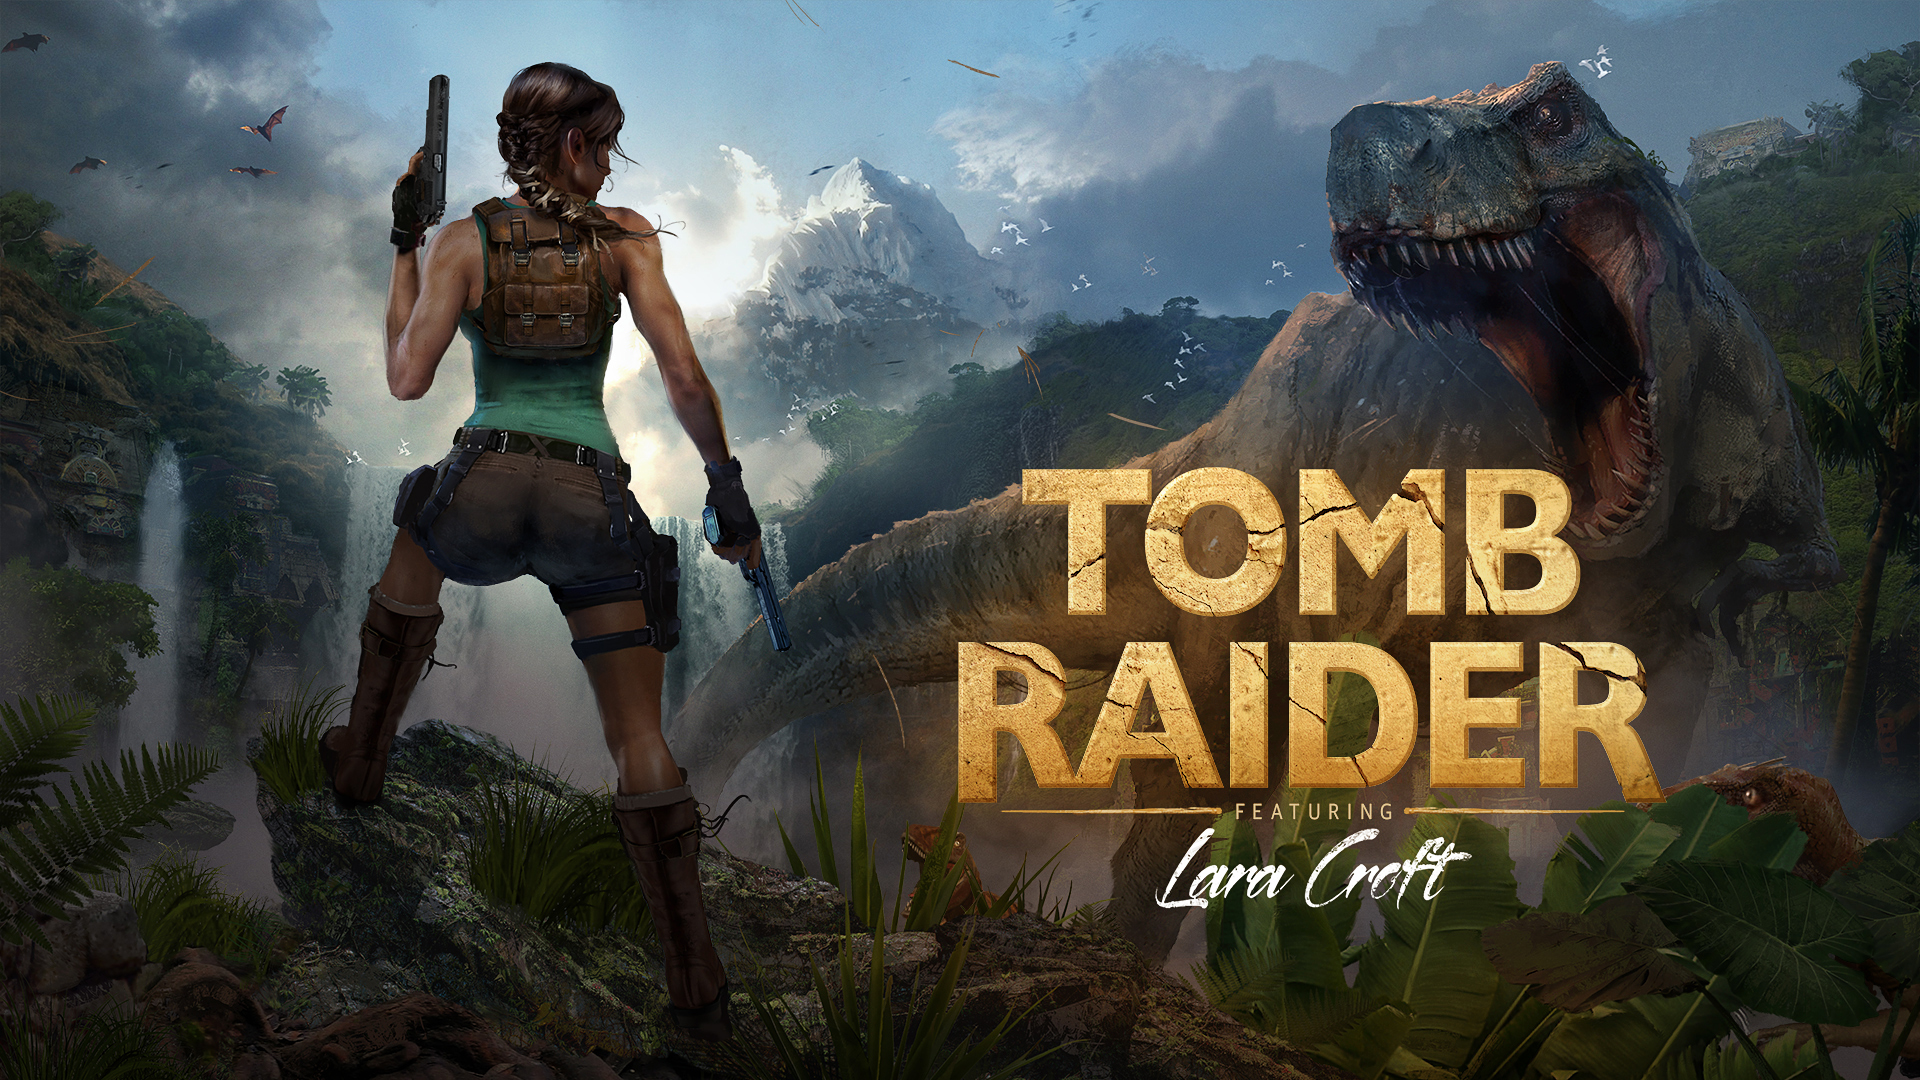 Brenoch Adams: A Tomb Raider 1 borítóképének újragondolása